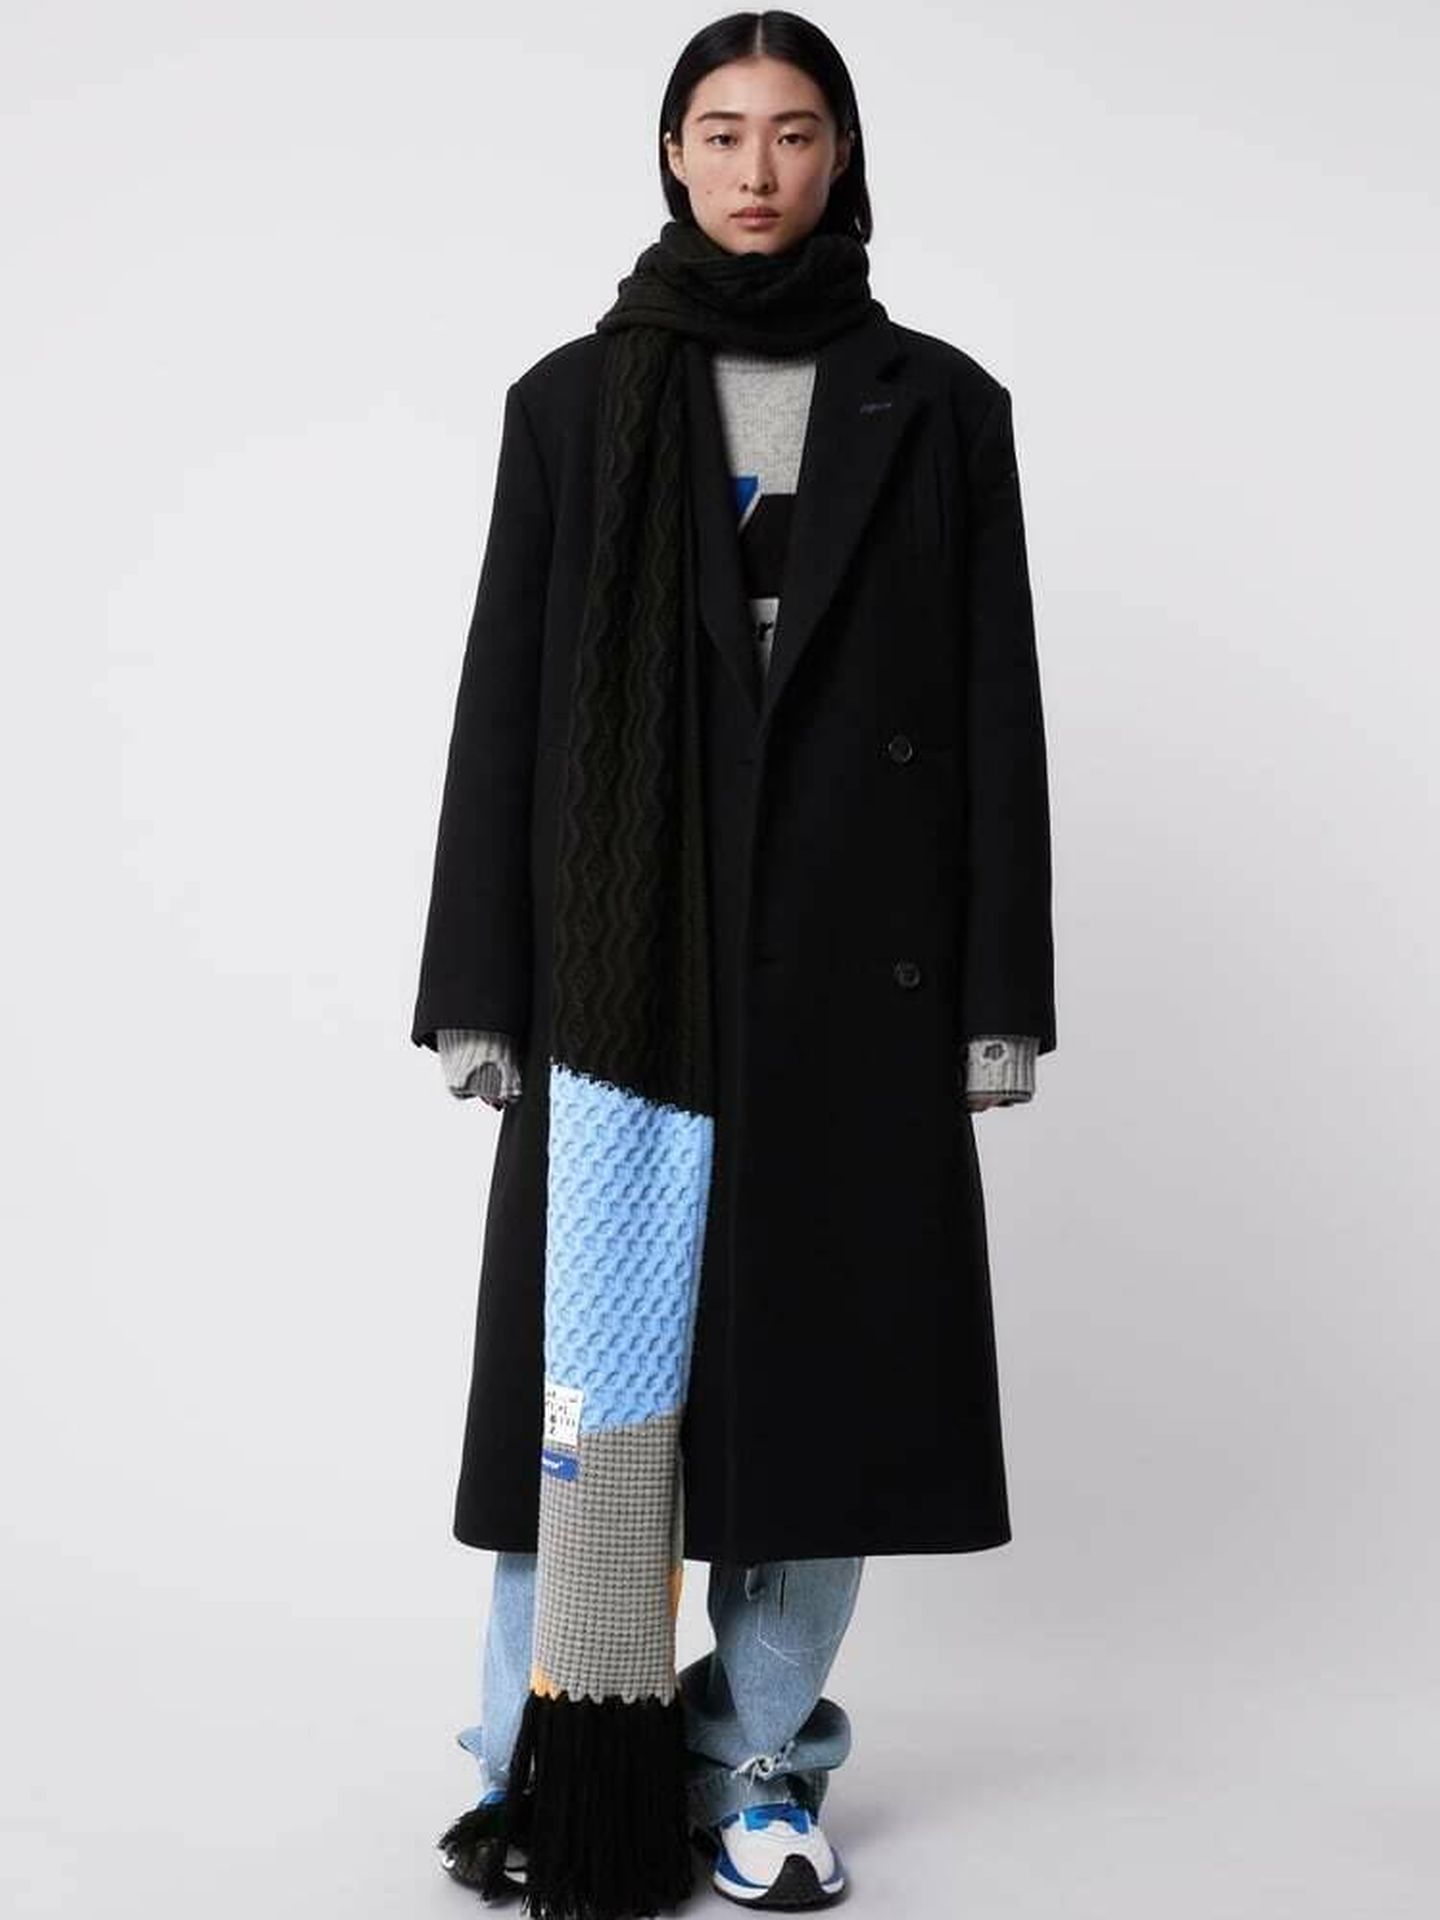 Un abrigo de la nueva colección de Zara. (Cortesía)